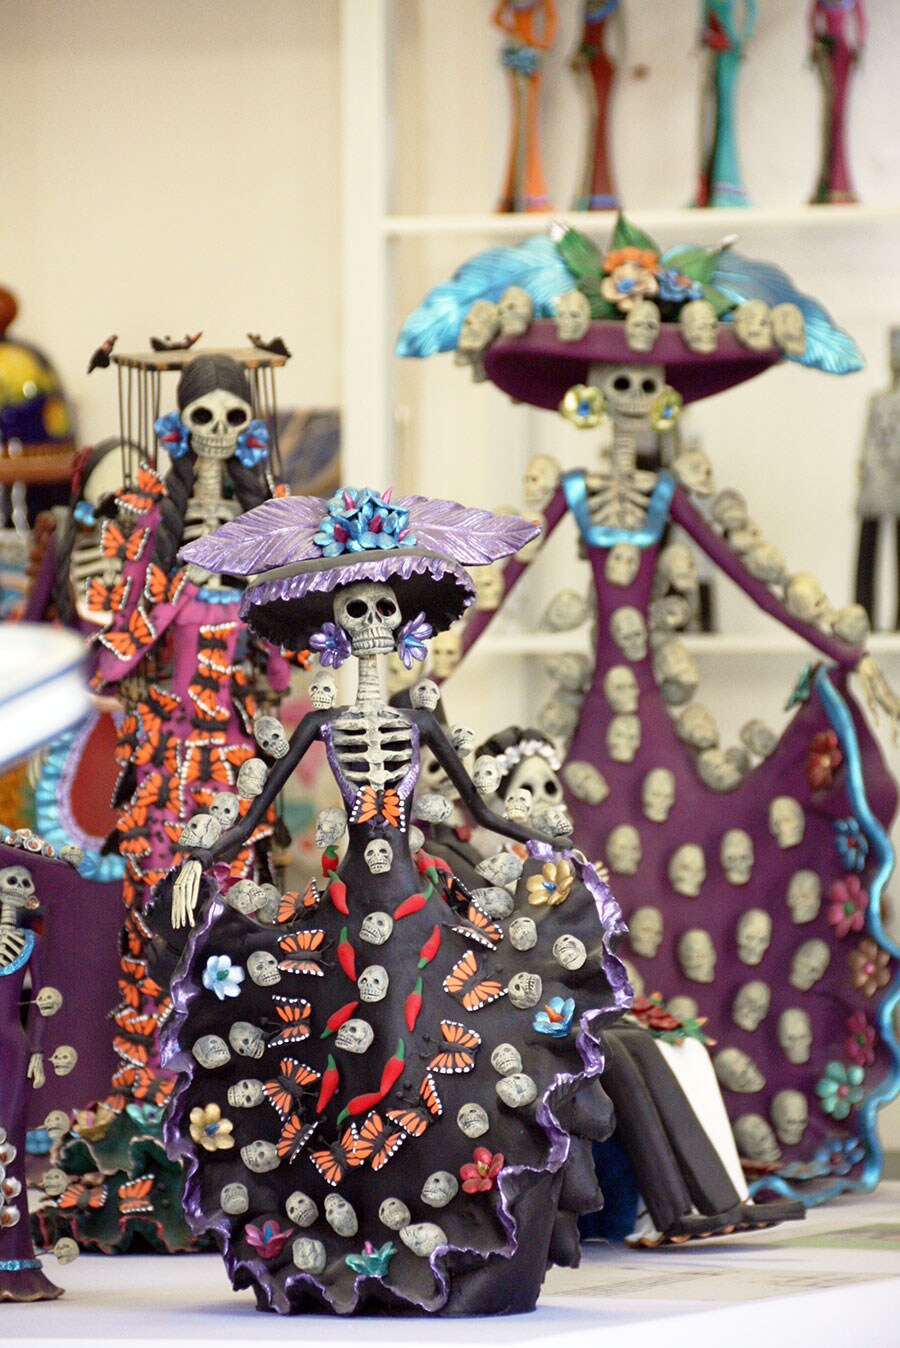 メキシコの祝祭日「死者の日」のガイコツ「カトリーナ」。